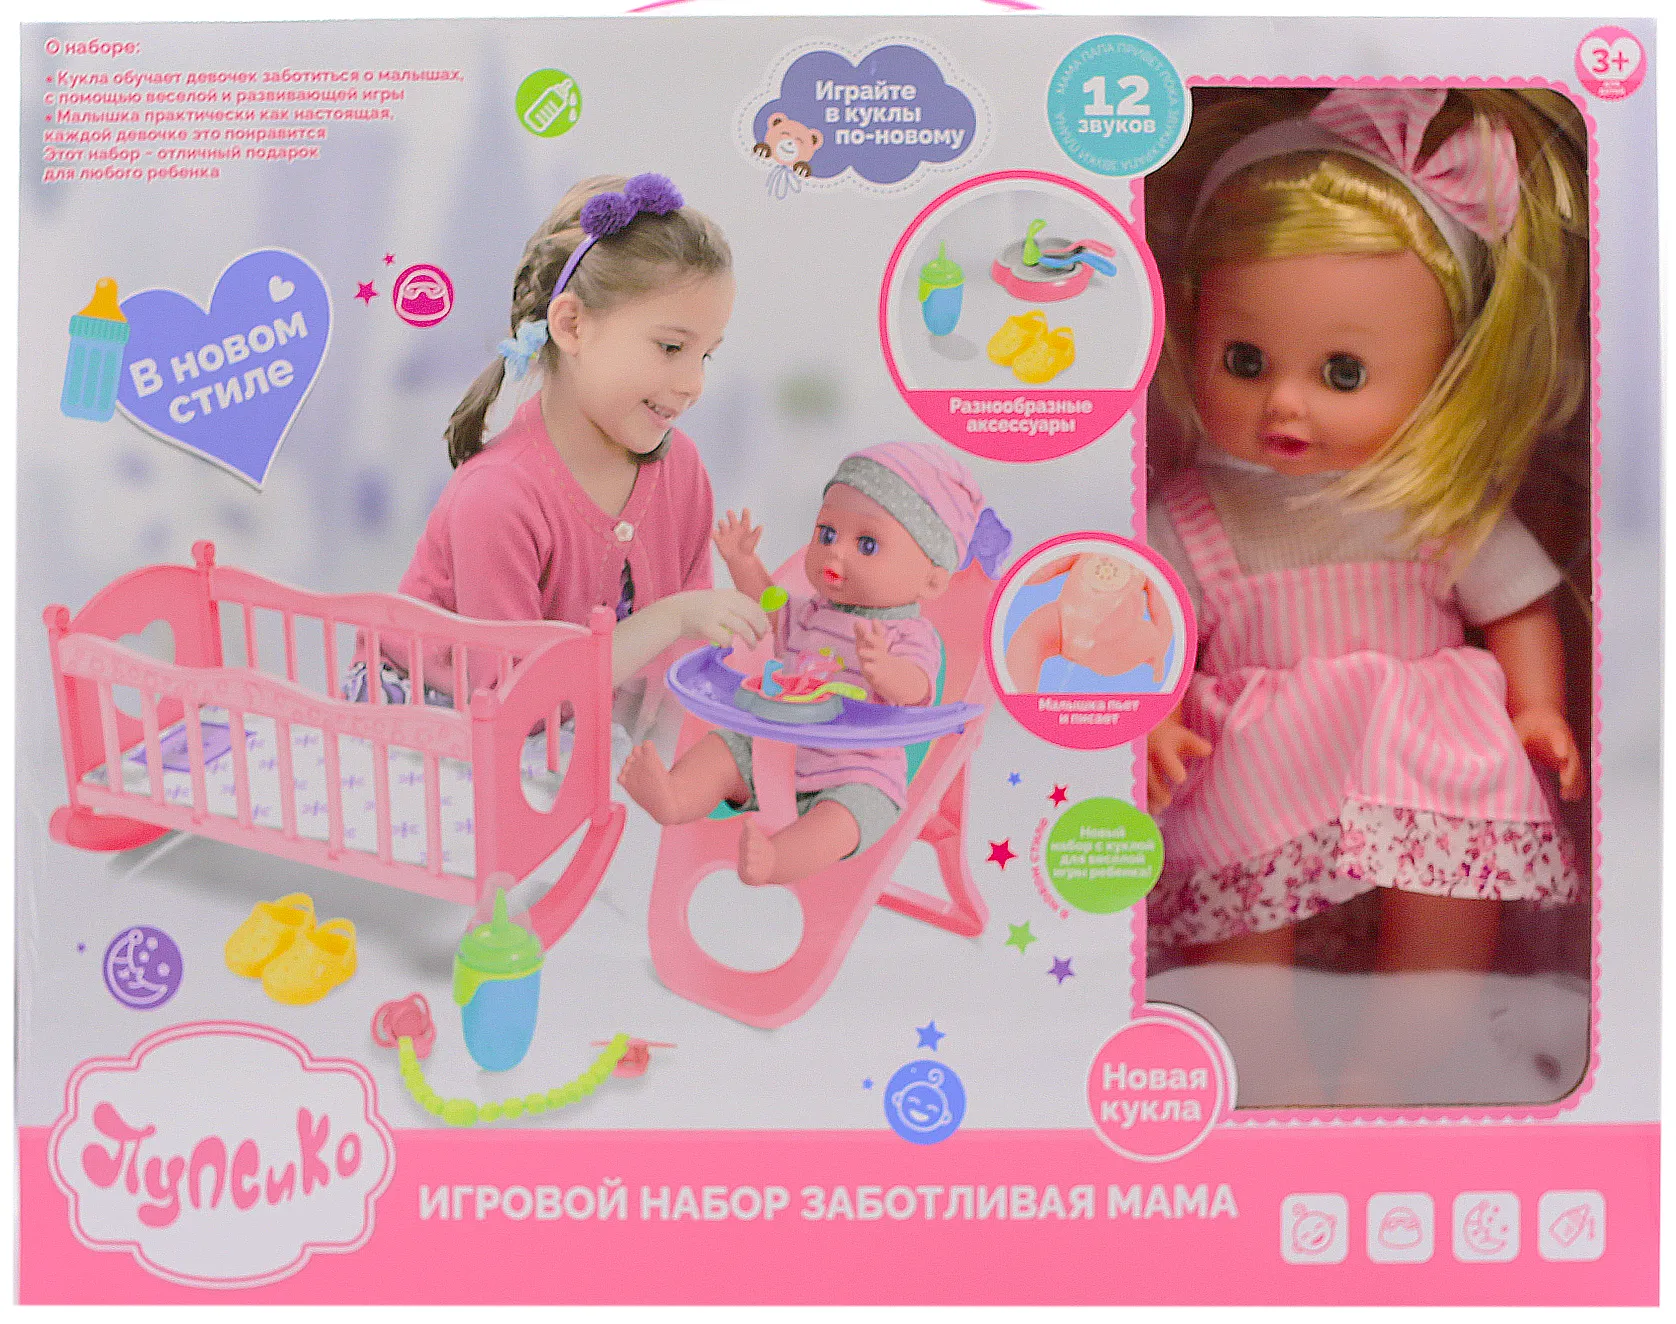 Диван для девочек Mia Барби купить в Екатеринбурге по низкой цене